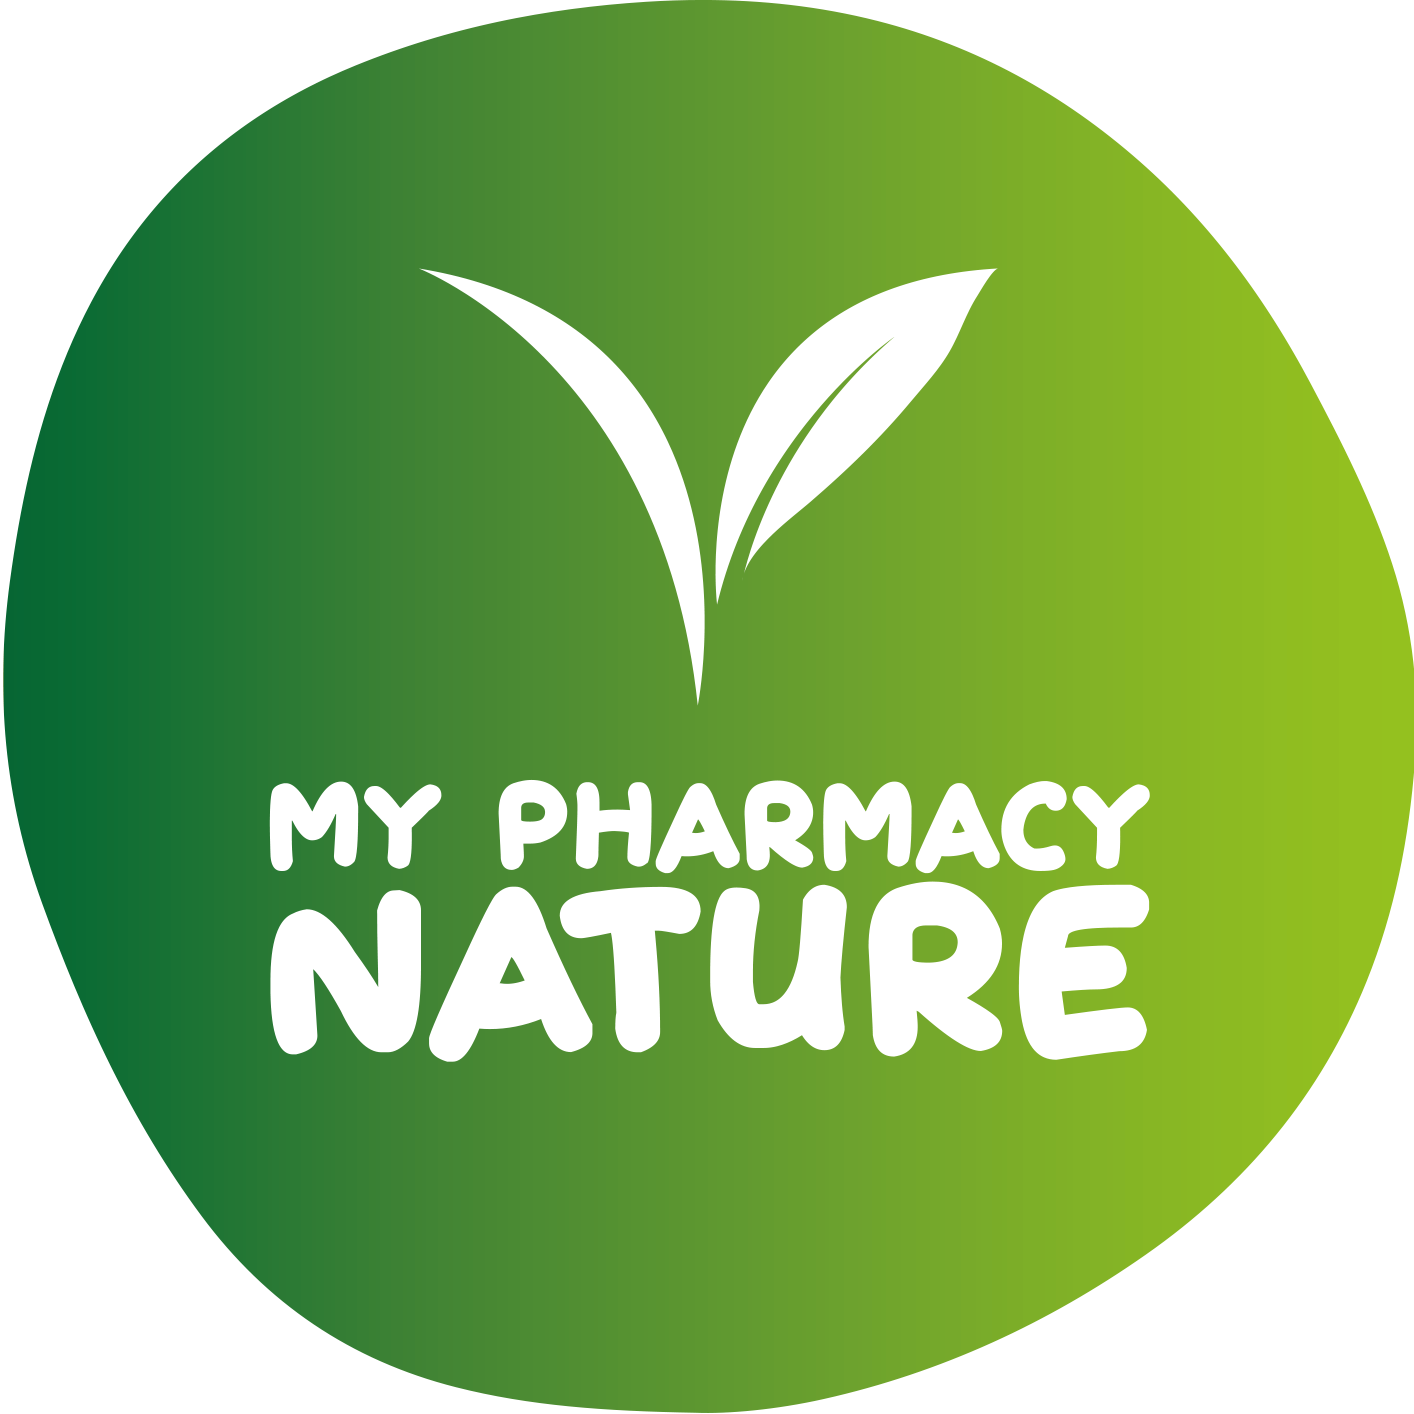 My pharmacy nature